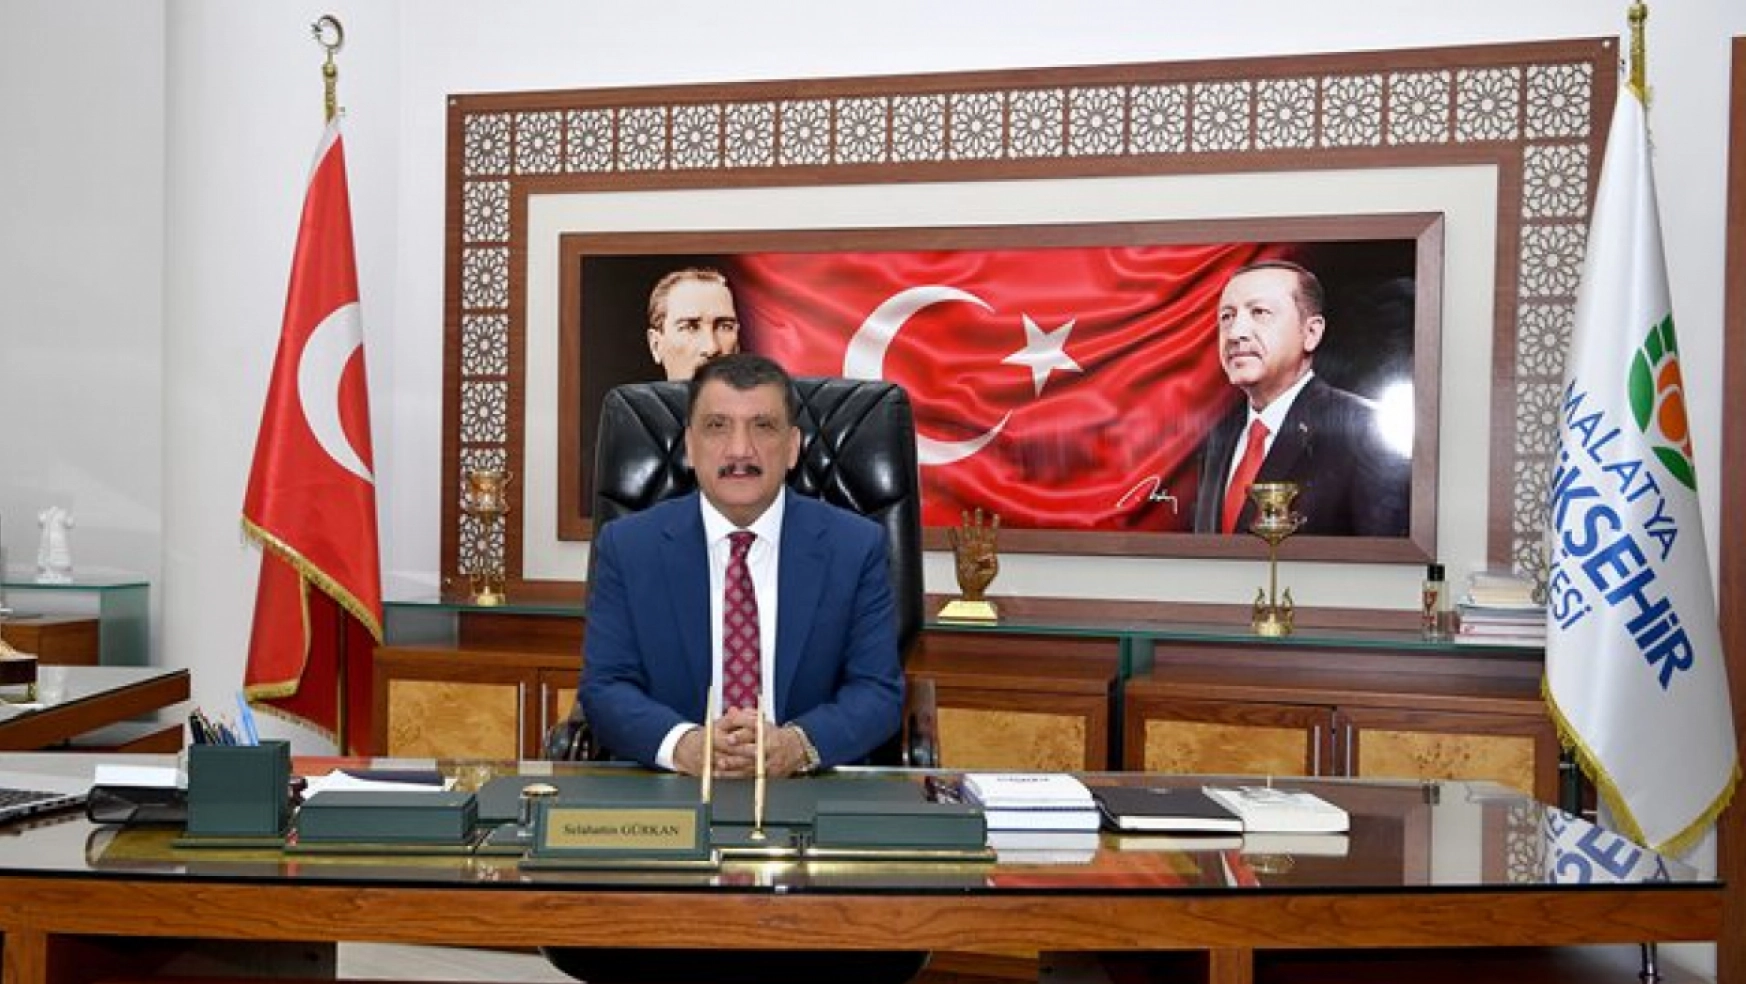 Başkan Gürkan, Yüce Türk Milletimiz, Tarihler Boyunca Nice Zaferlere İmza Atmıştır